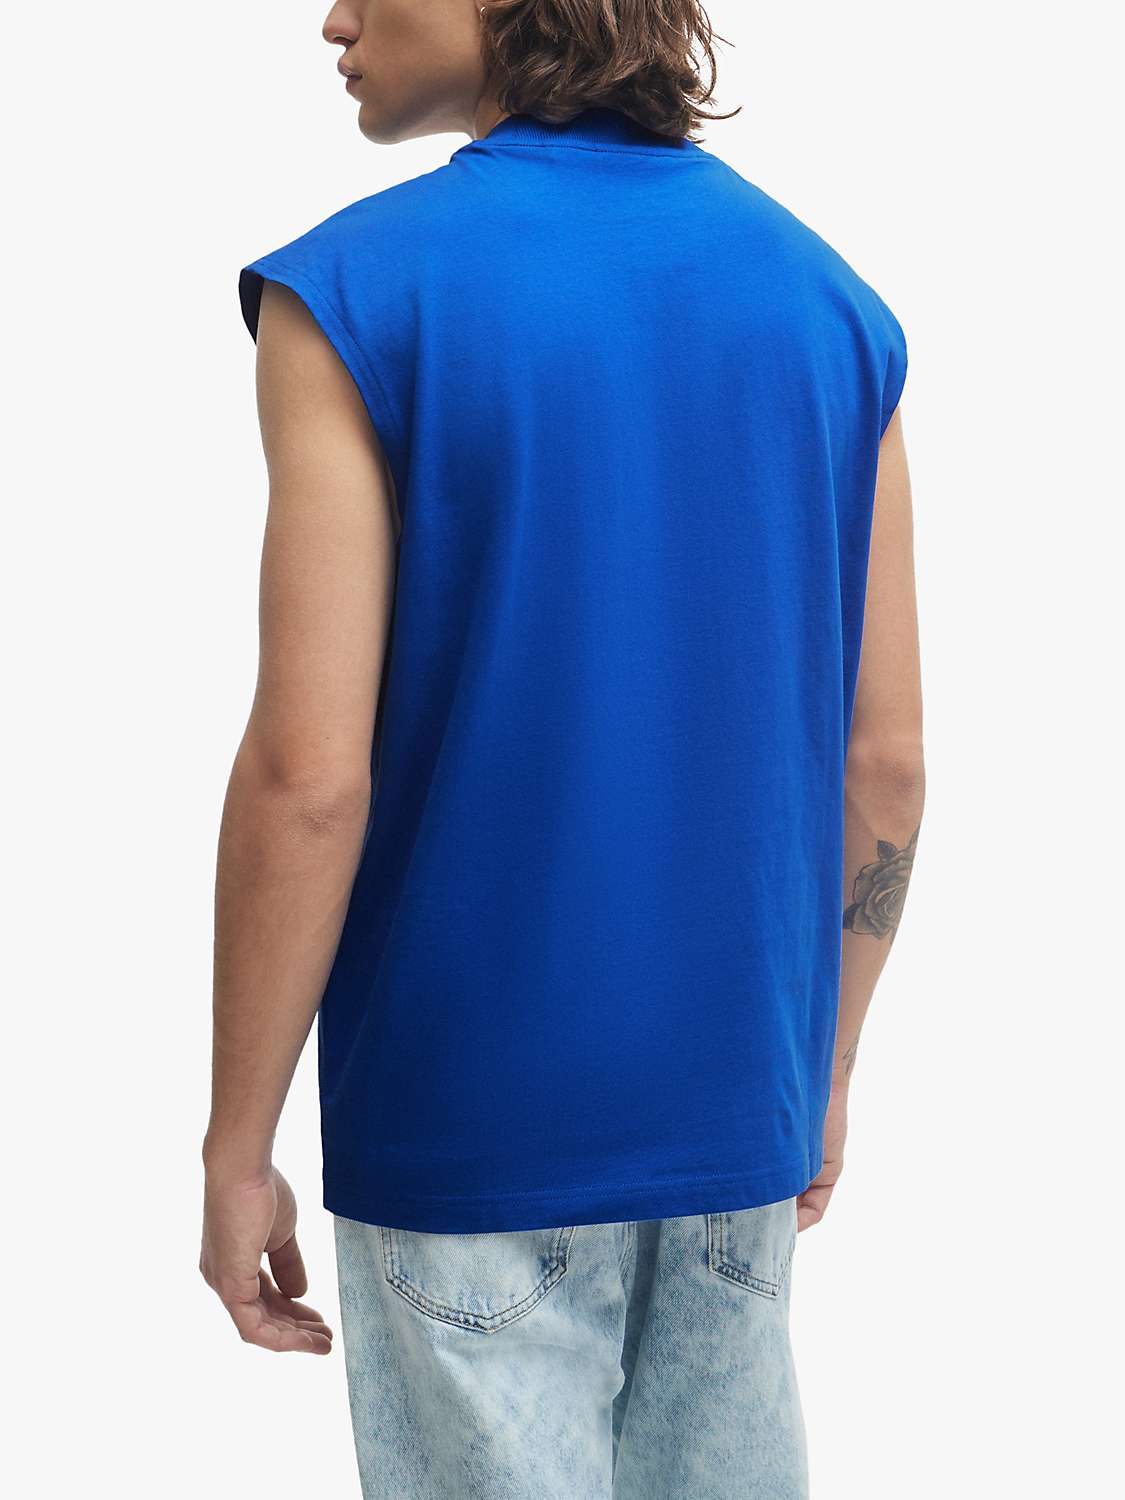 Buy HUGO Navertz 493 Short Sleeve T-Shirt, Open Blue Online at johnlewis.com